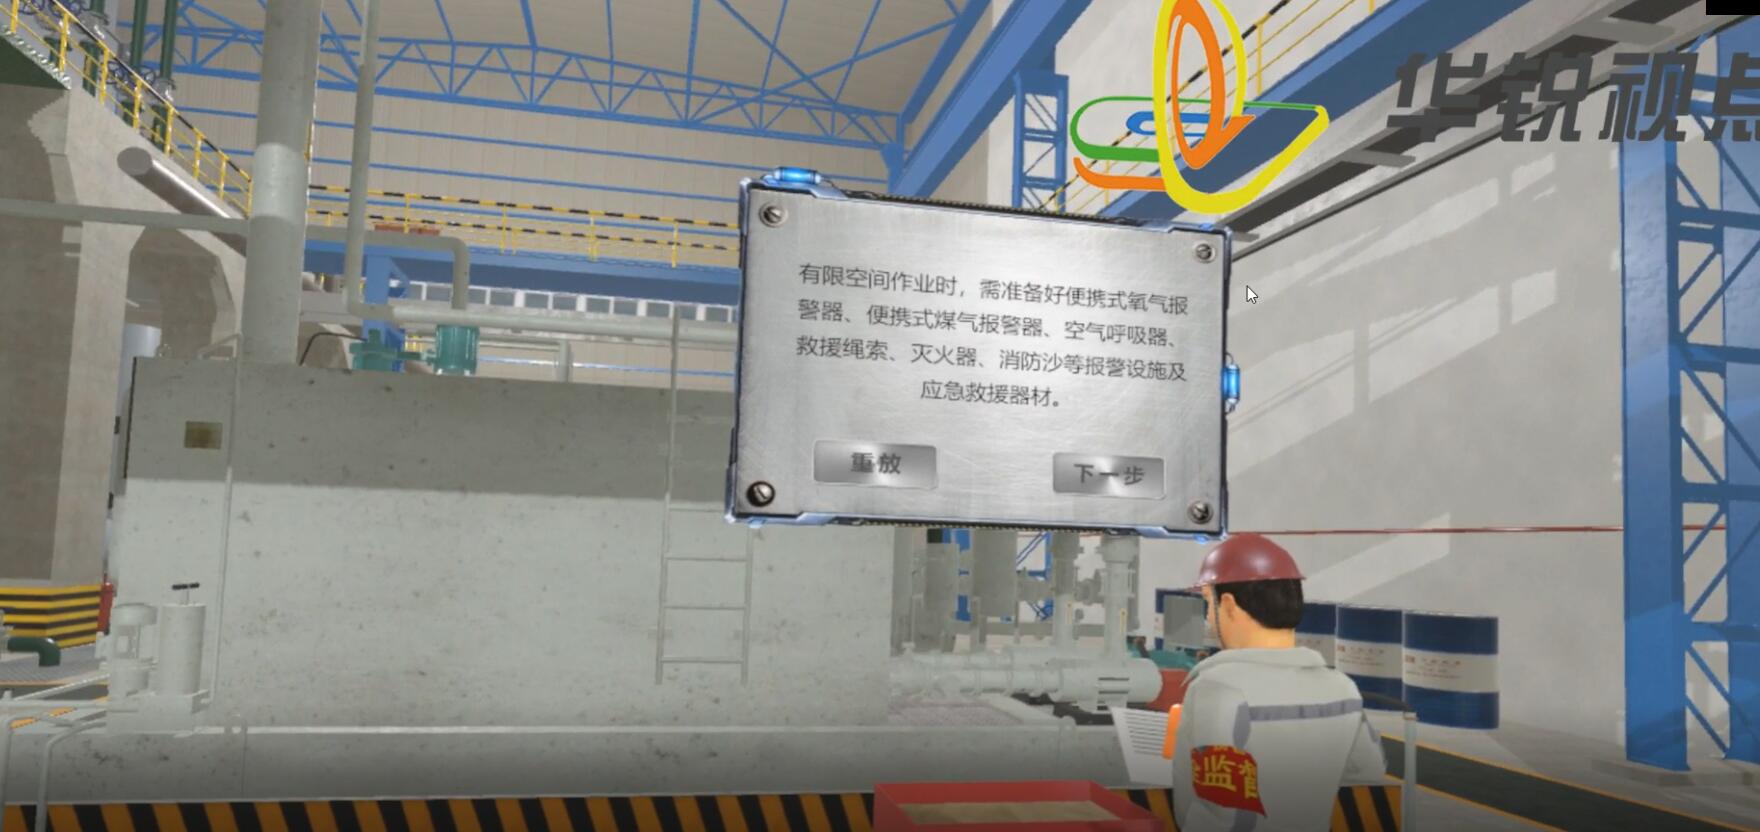 钢铁冶金常见事故VR模拟体验安全培训系统